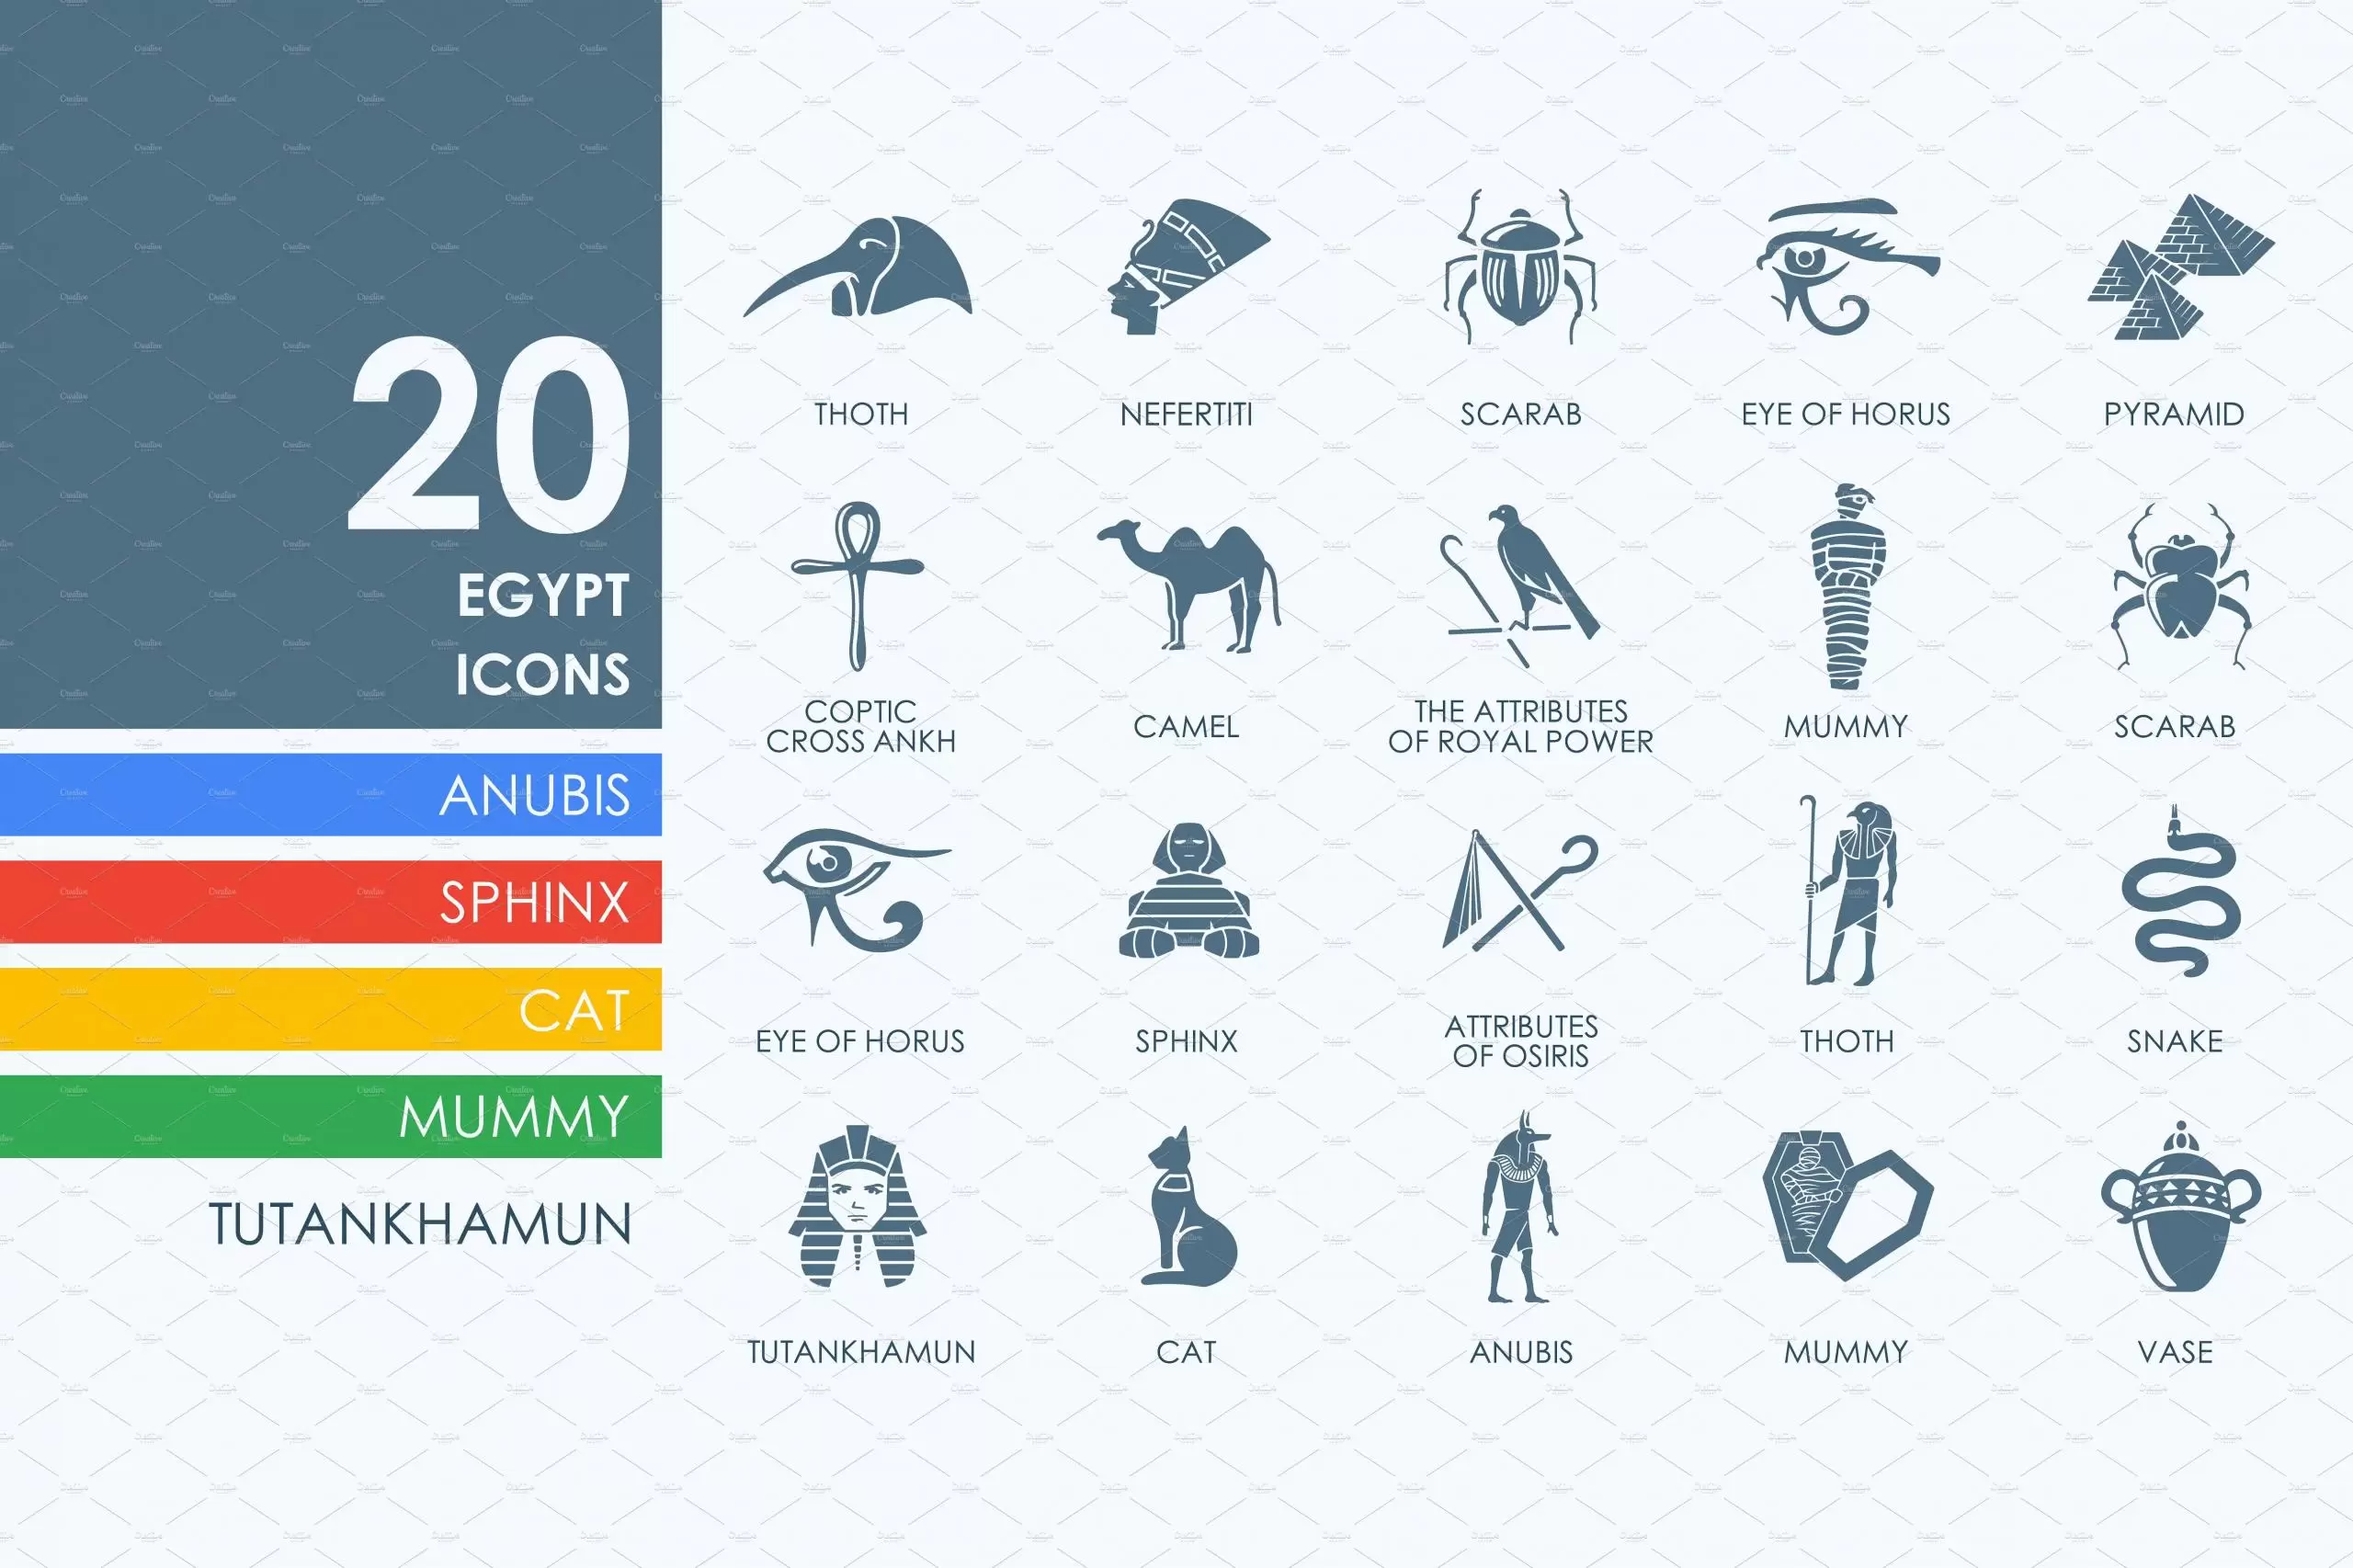 埃及矢量图标素材 20 Egypt icons插图